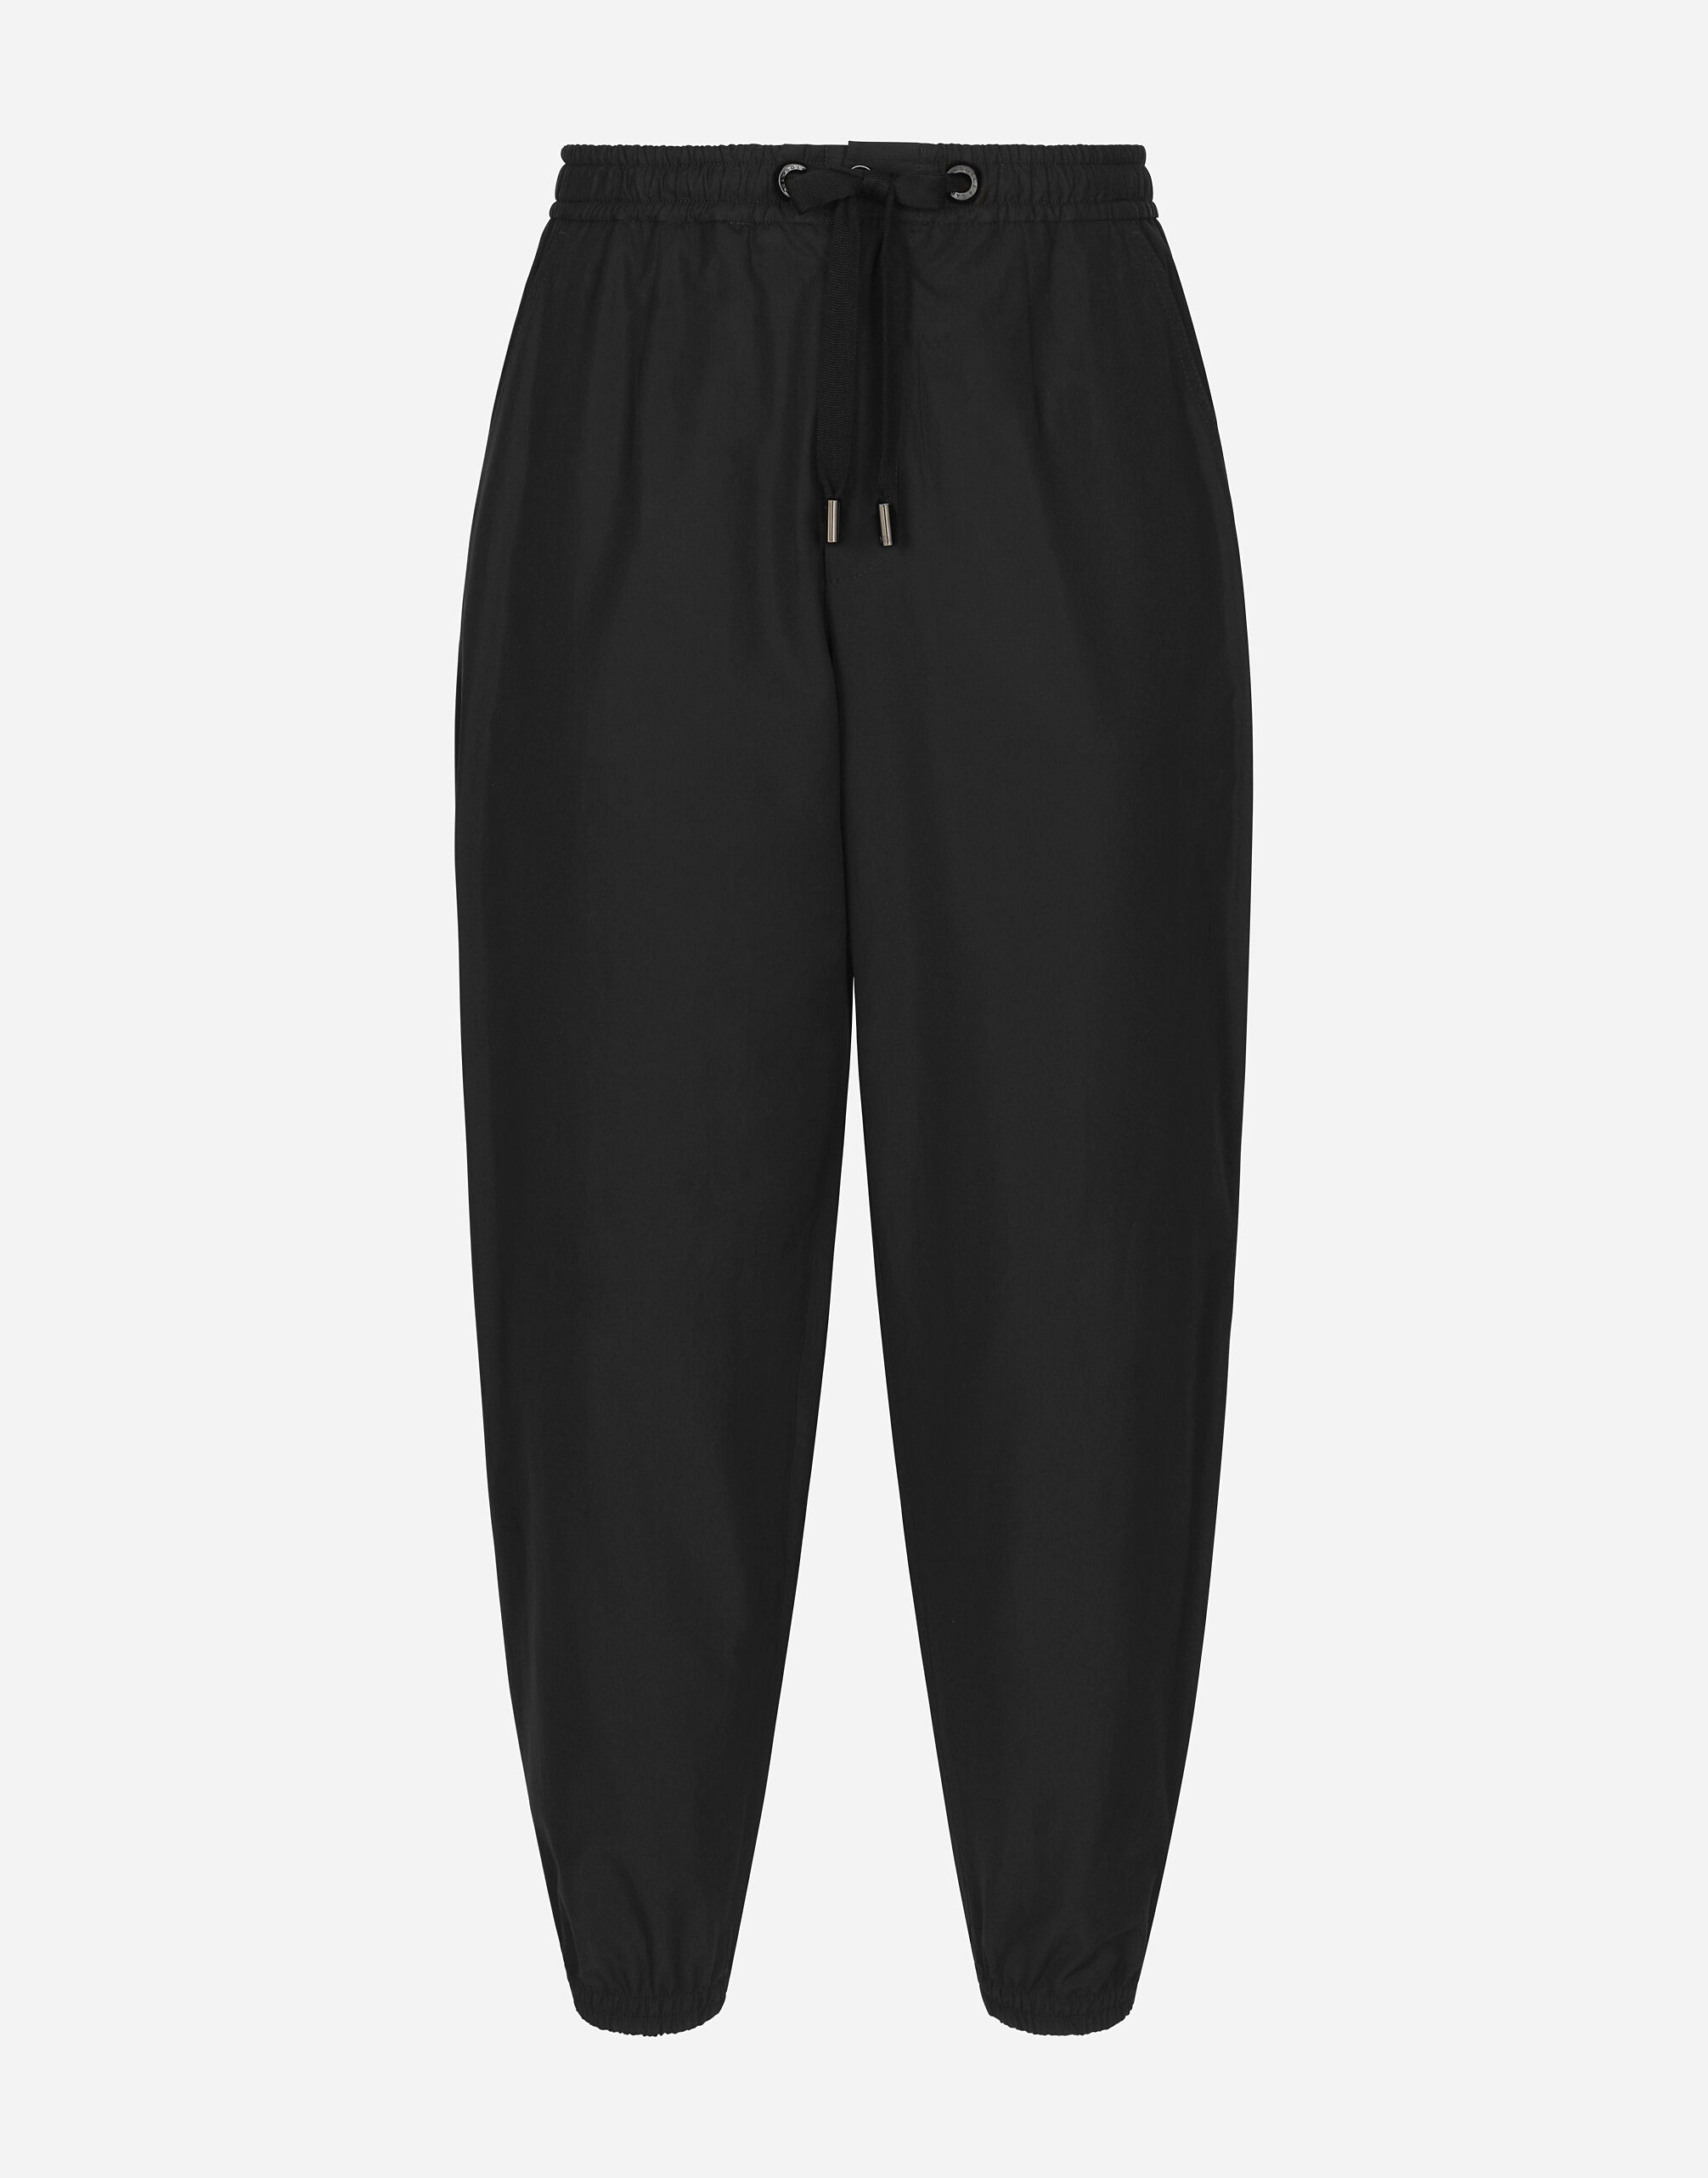 Dolce & Gabbana Cotton jogging pants Print G9AZDTFS6N5